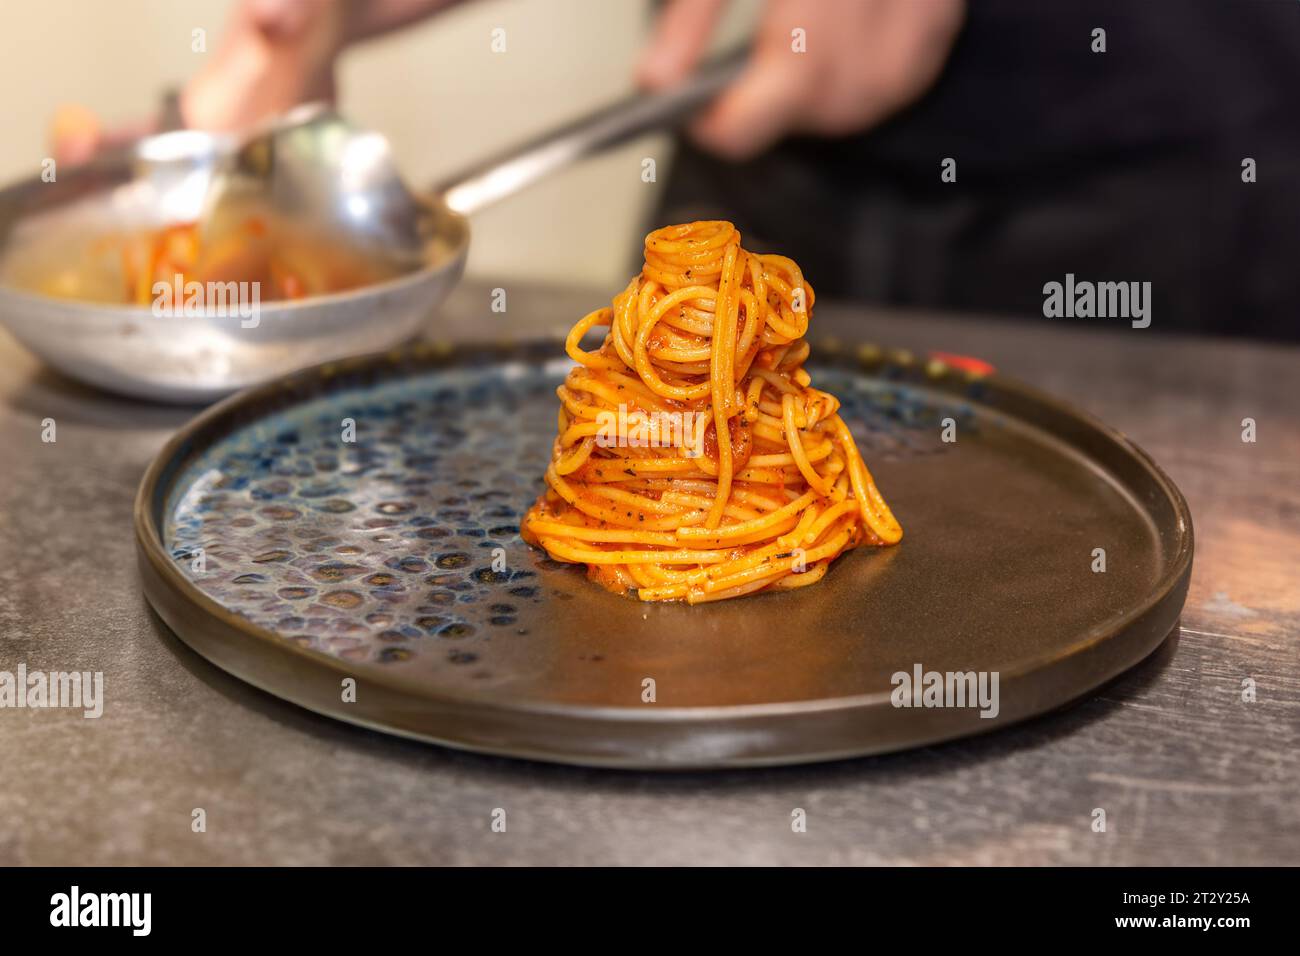 Spaghetti à la sauce tomate sur une assiette noire sur fond flou Banque D'Images